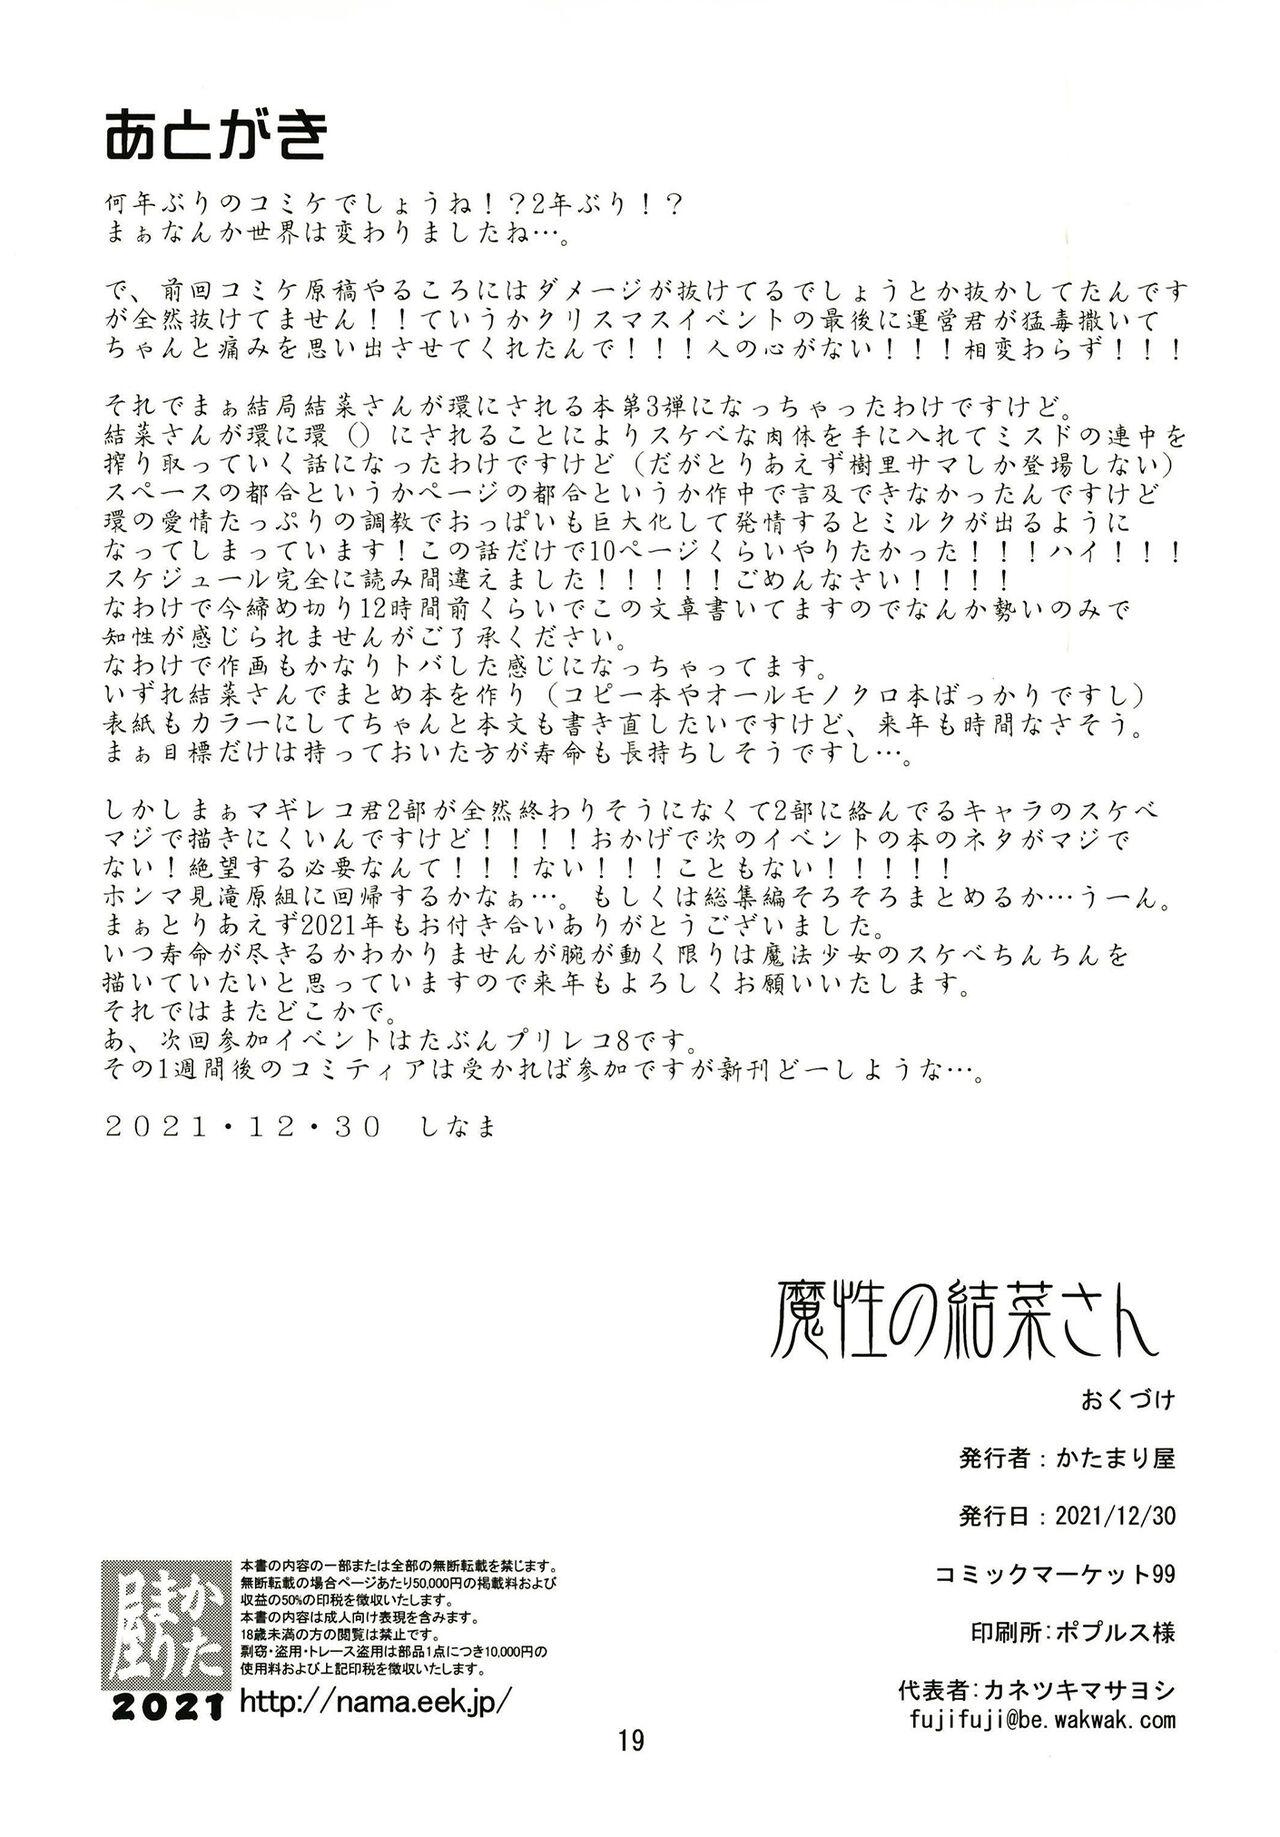 Sweet Mashou no Yuna-san - Puella magi madoka magica side story magia record Culito - Page 19